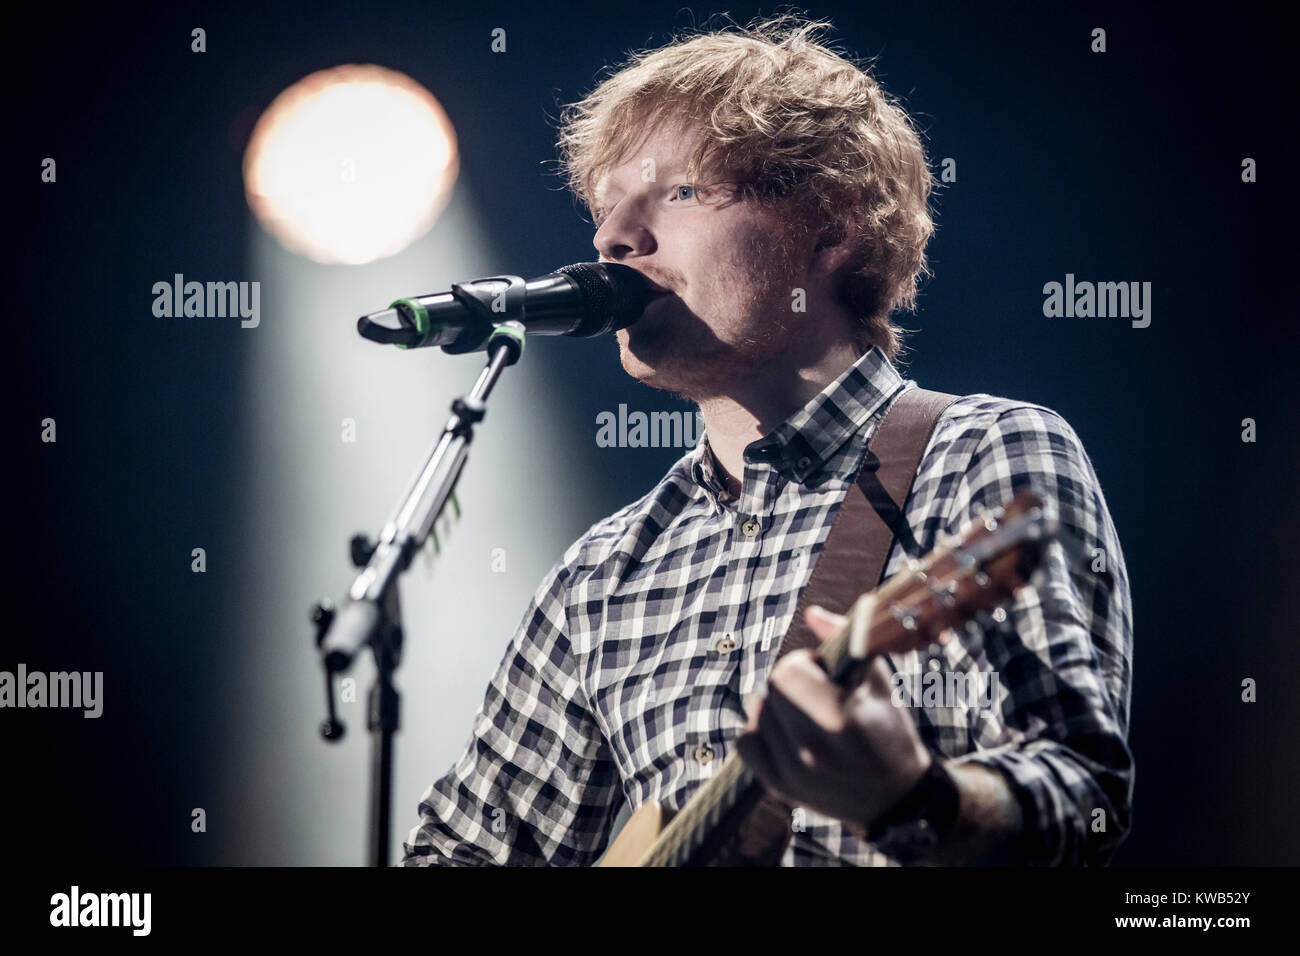 Die beliebte englische singer-songwriter und Musiker Ed Sheeran führt eine akustische live Konzert im Forum in Kopenhagen. Das Konzert war ausverkauft und Sheeran durchgeführt solo und ohne ein backing band. Dänemark, 11/11 2014. Stockfoto